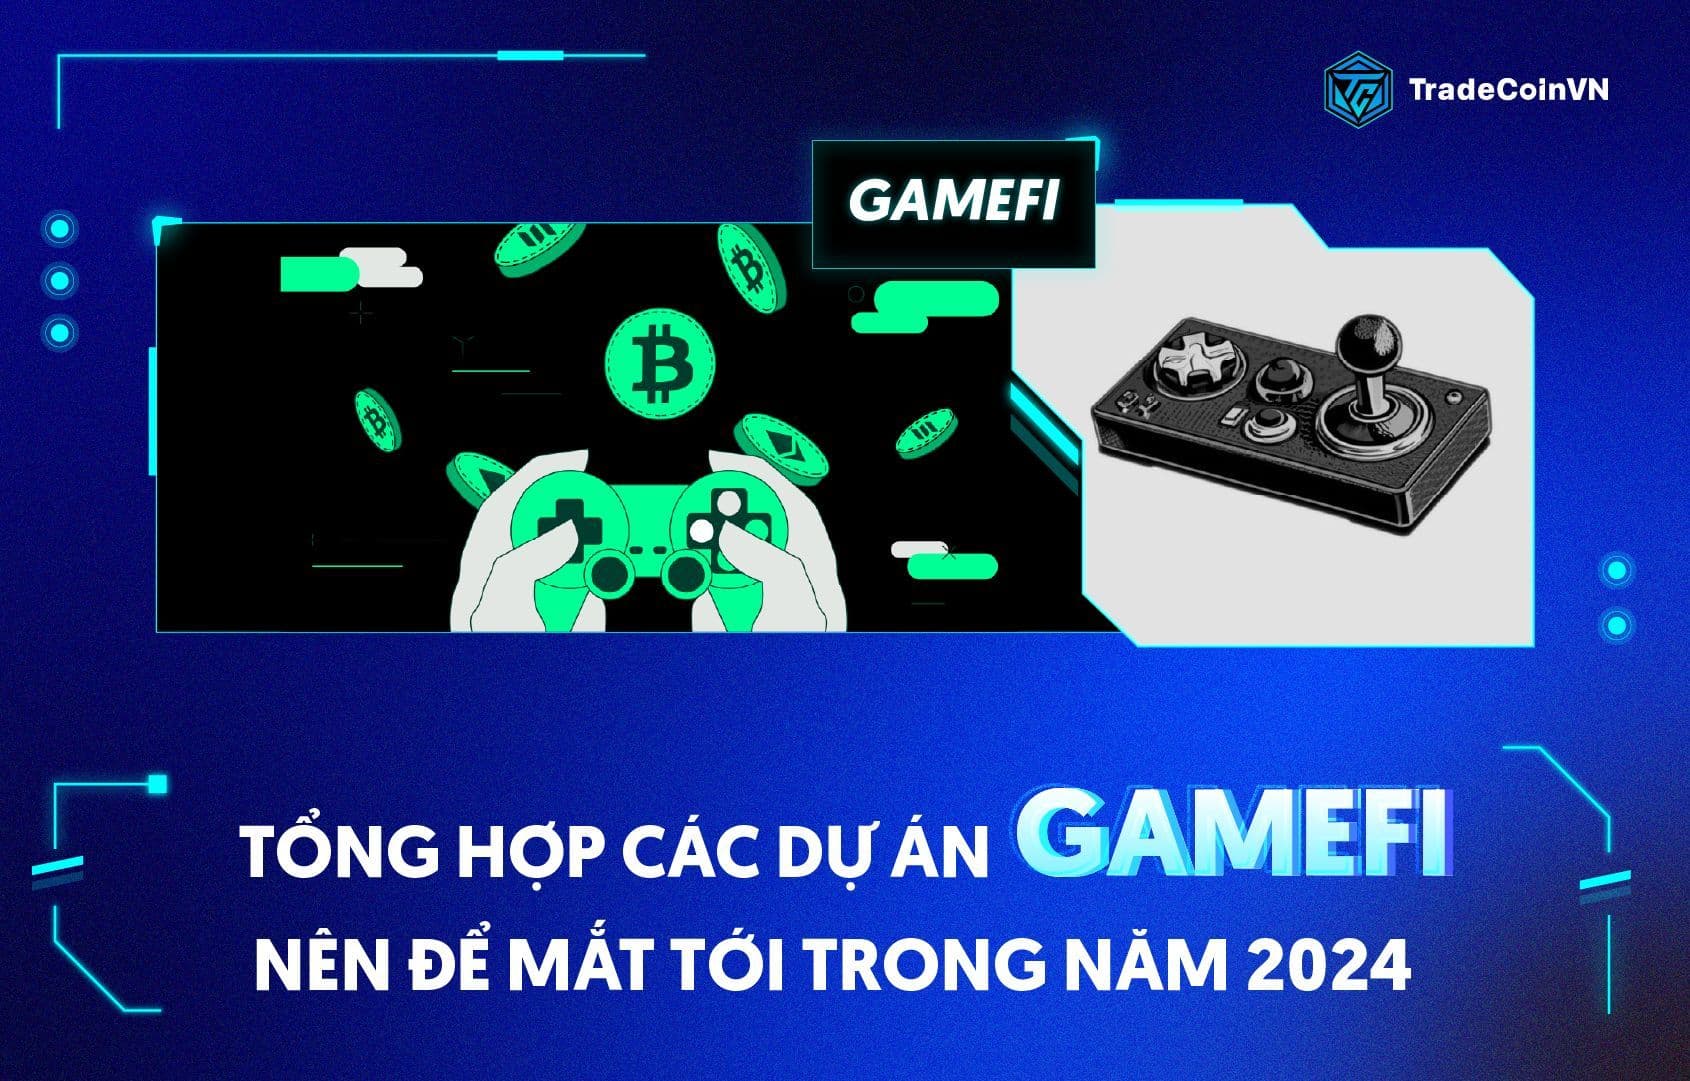 Tổng hợp các dự án GameFi nên để mắt tới trong năm 2024